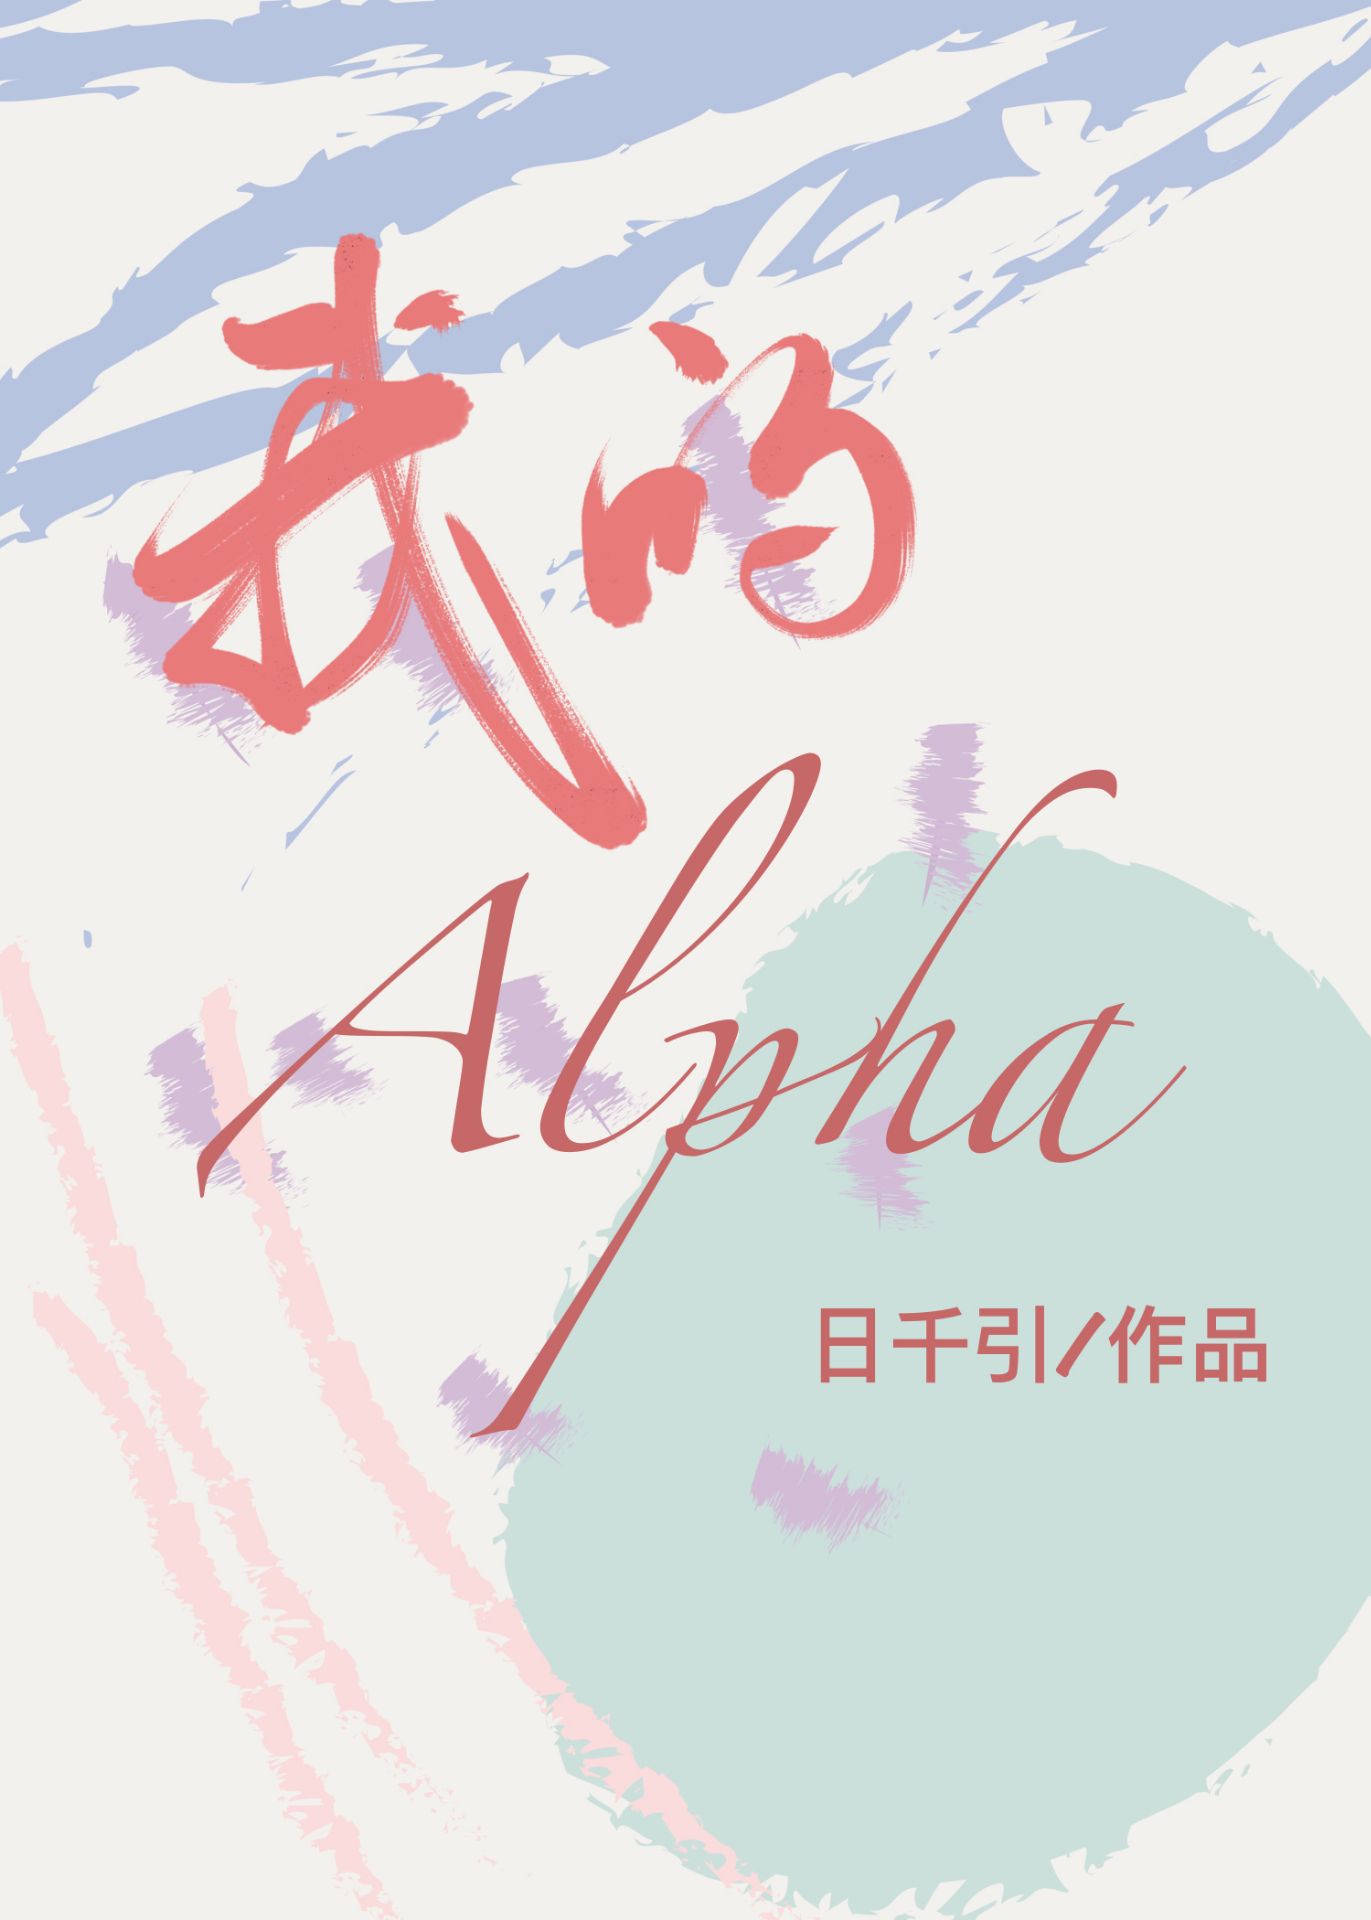 [小说]晋江VIP2020-03-17完结 总书评数：1878当前被收藏数：2647 宗沅五岁多的时候，宗父_我的alpha